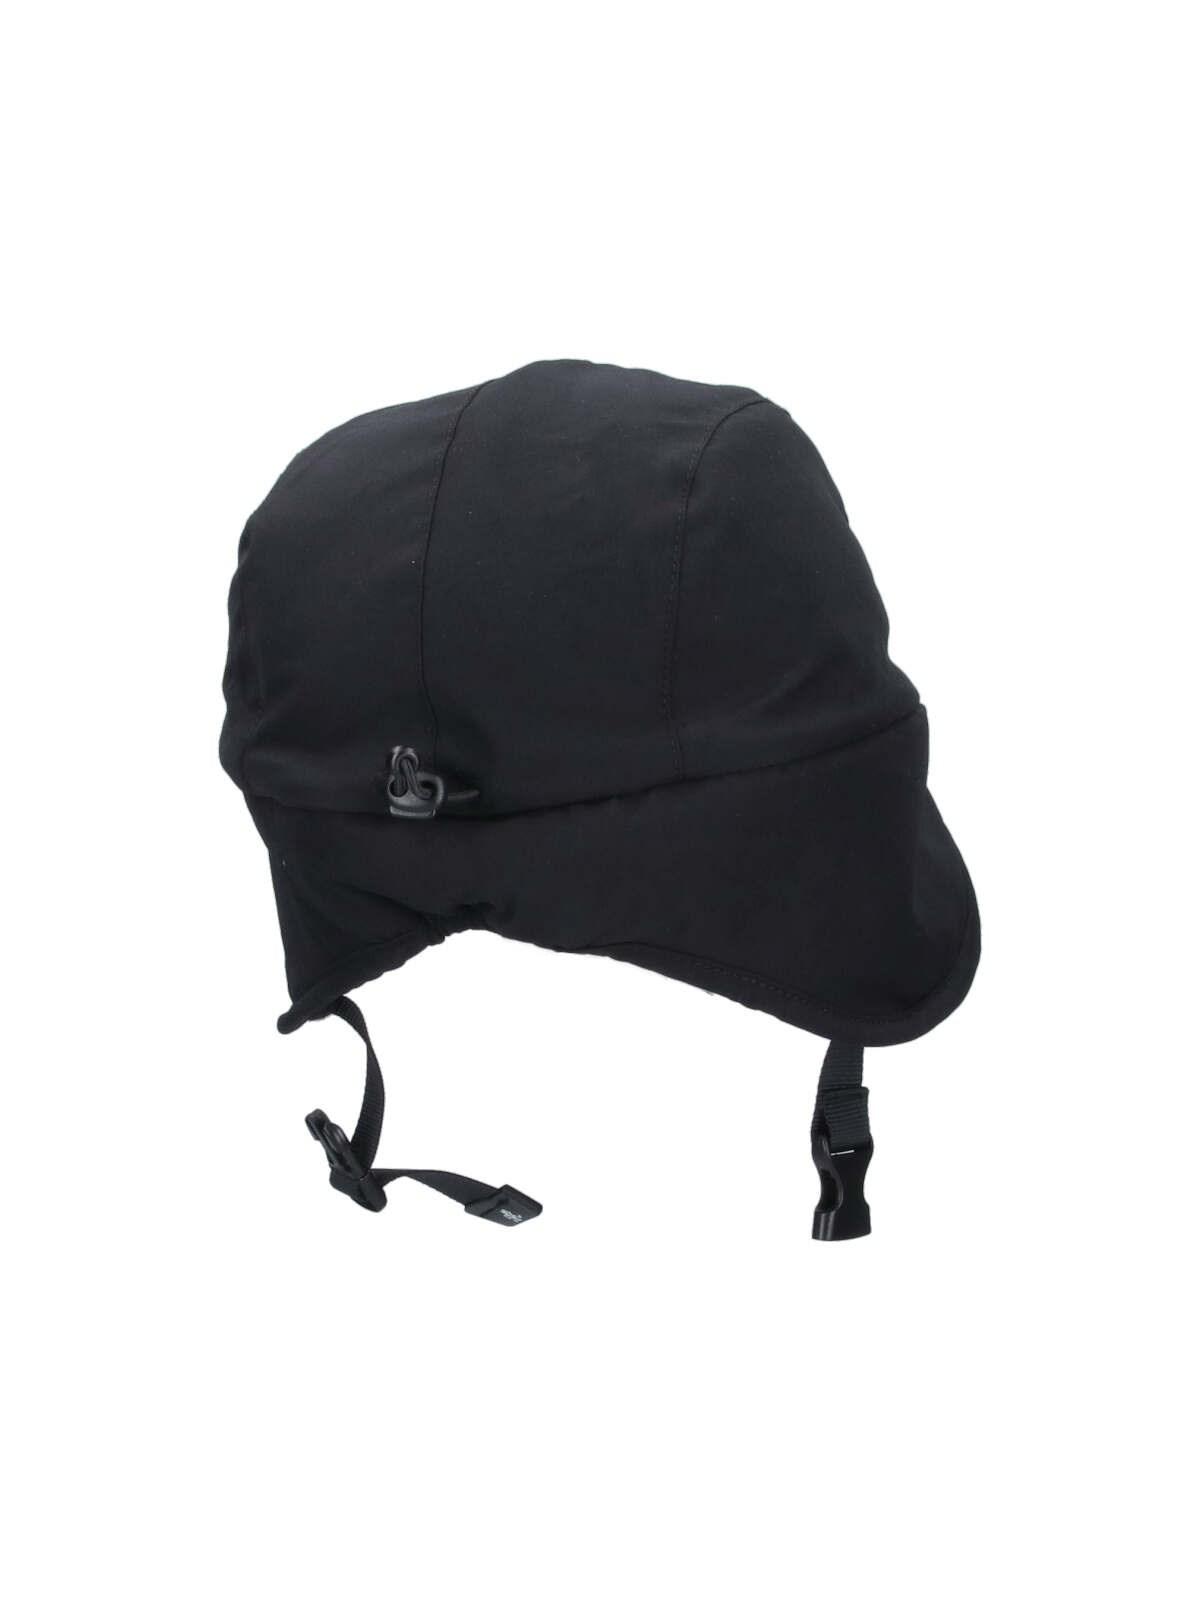 Shop Gramicci X F/ce Boa Hat